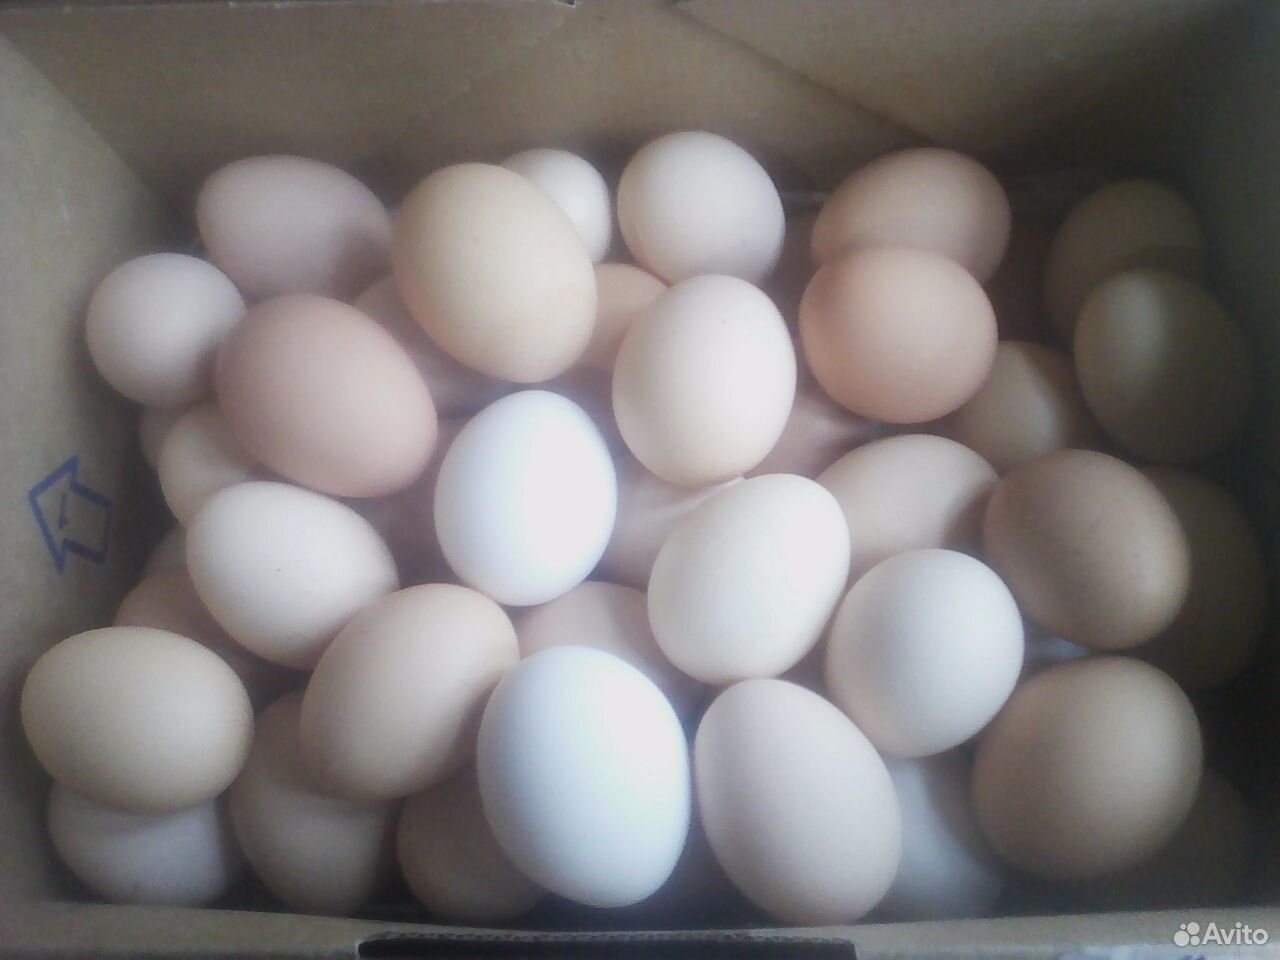 Купить инкубационное яйцо в курской области. Инкубаторские яйца. Яйцо инкубационное купить в Орле и области на авито. Инкубационное яйцо купить в Нижегородской области на авито.